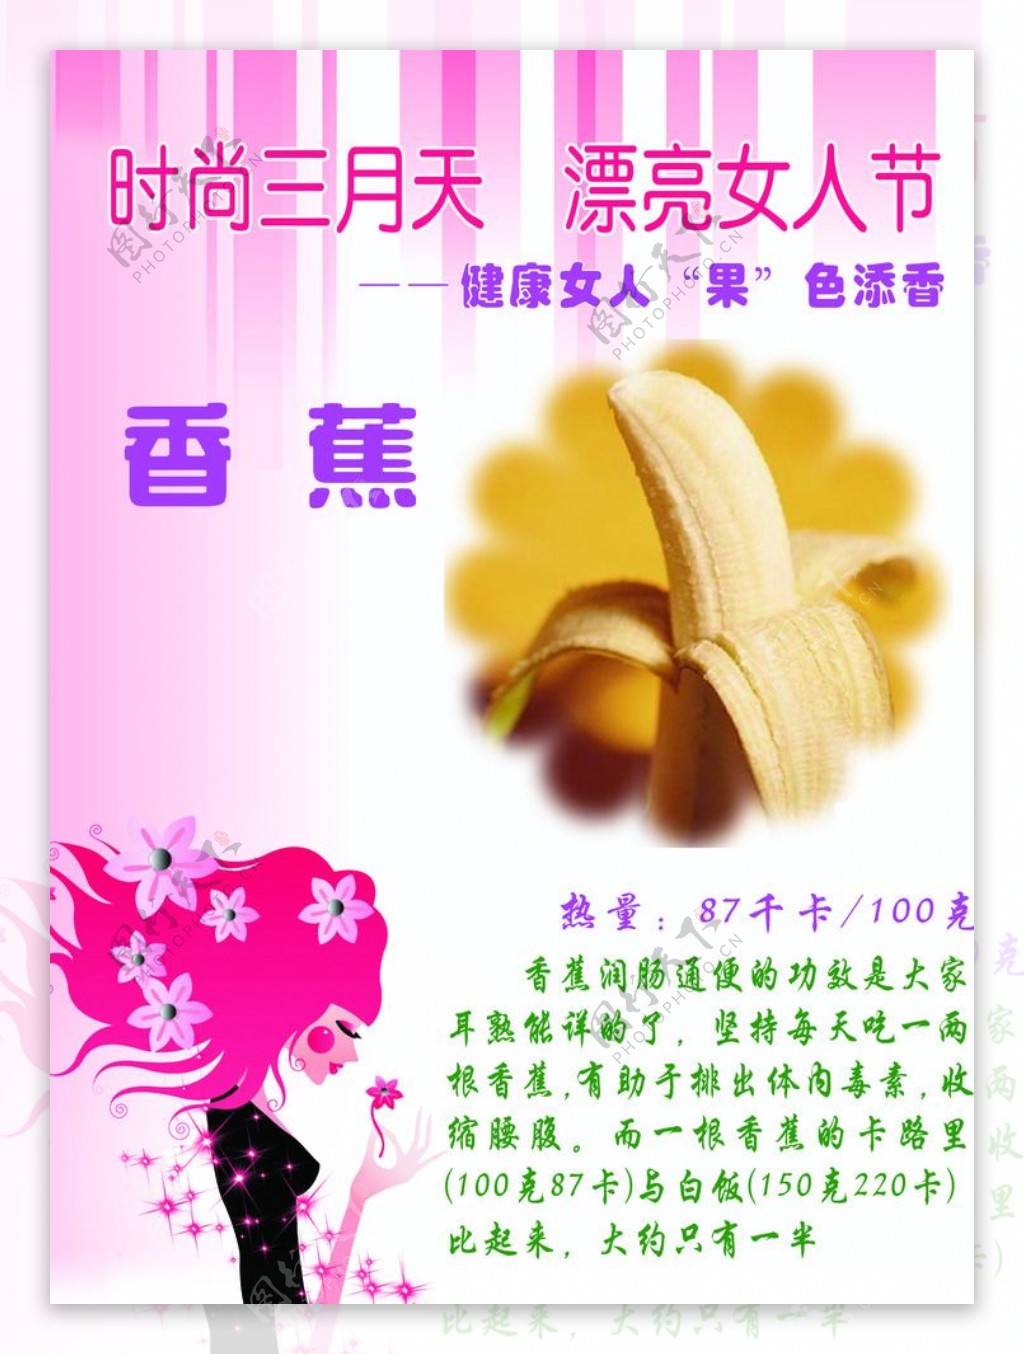 常吃香蕉可防治多种疾病_日常养生_道教之音_养生,水果,香蕉